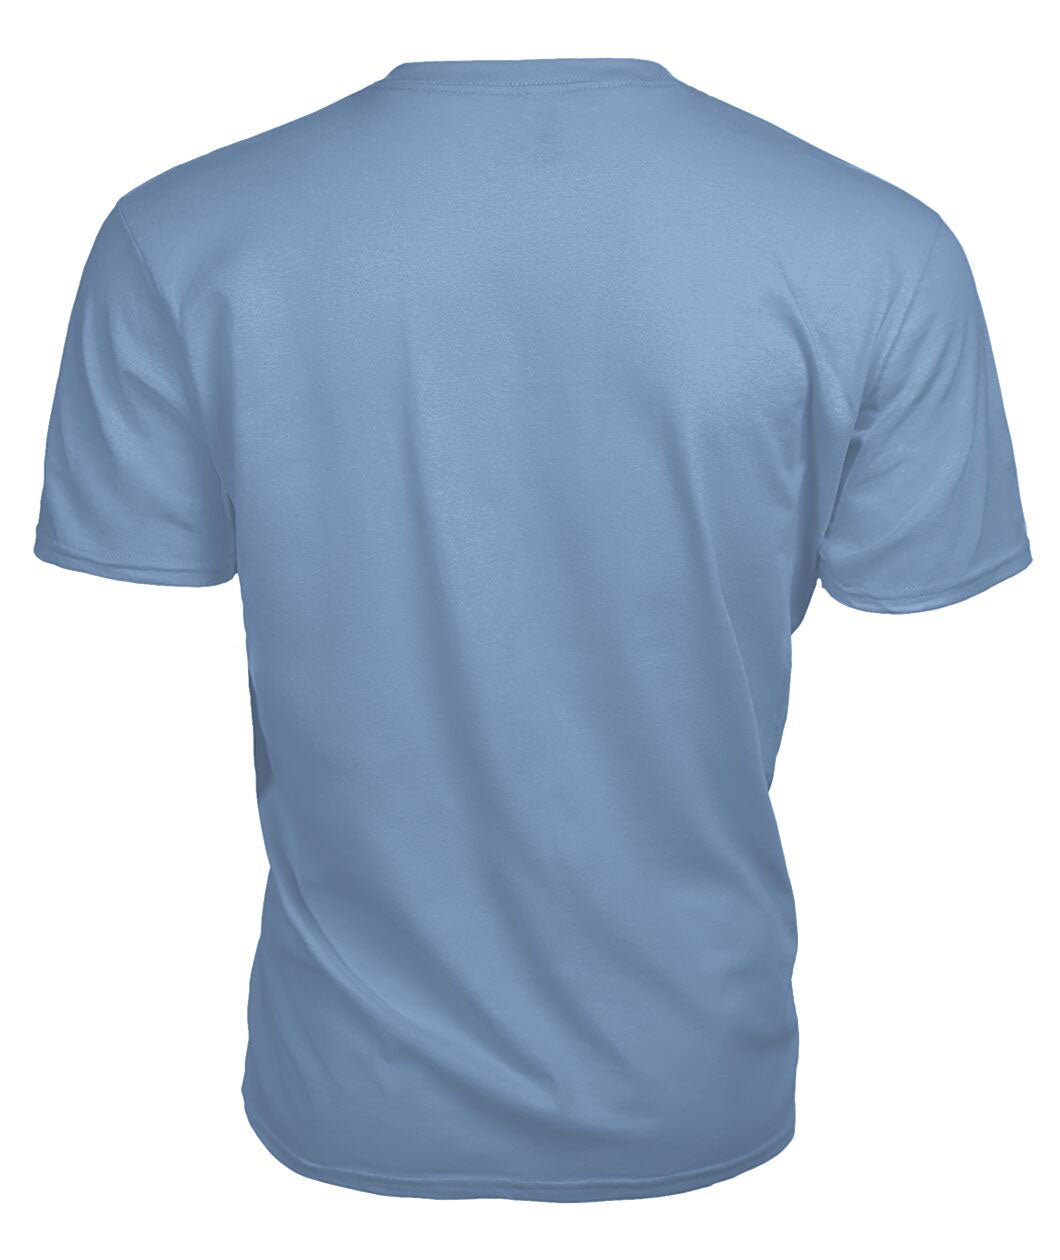 Scott Green Weathered Tartan Crest 2D T-shirt - Blood Runs Through My Veins Style